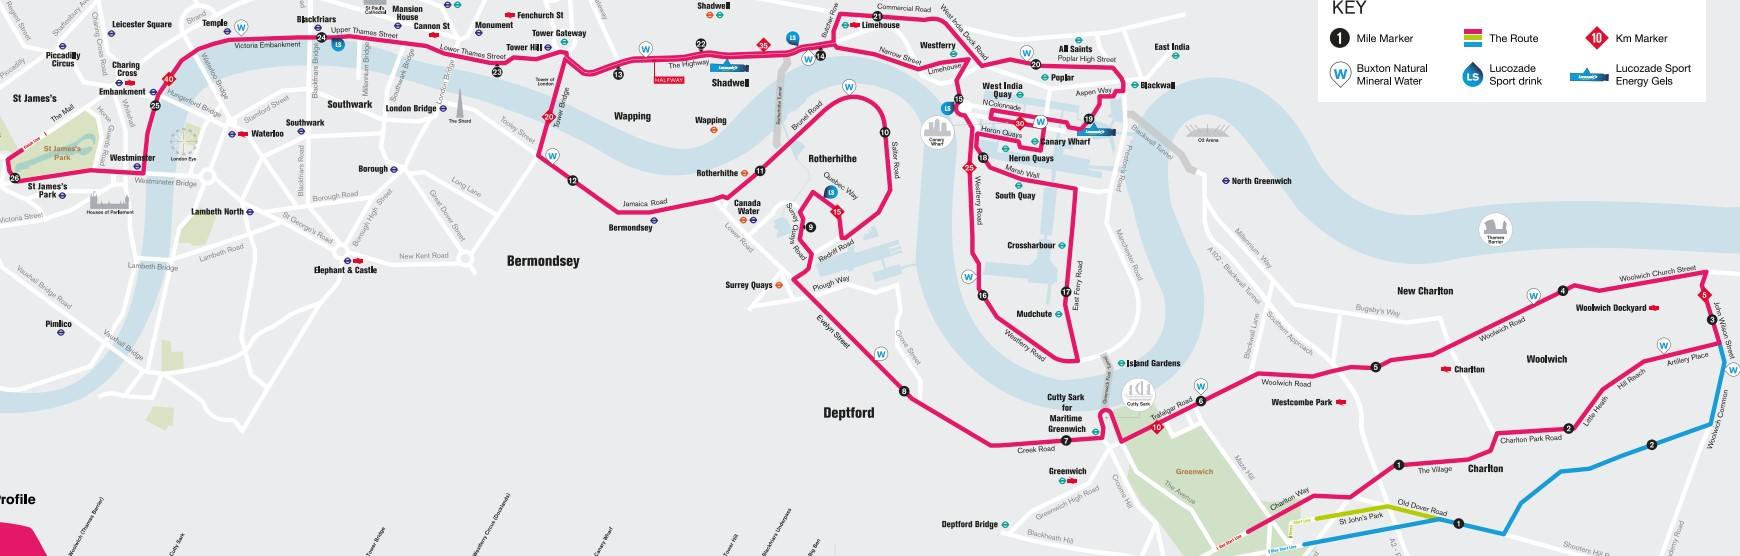 London Marathon Course Map